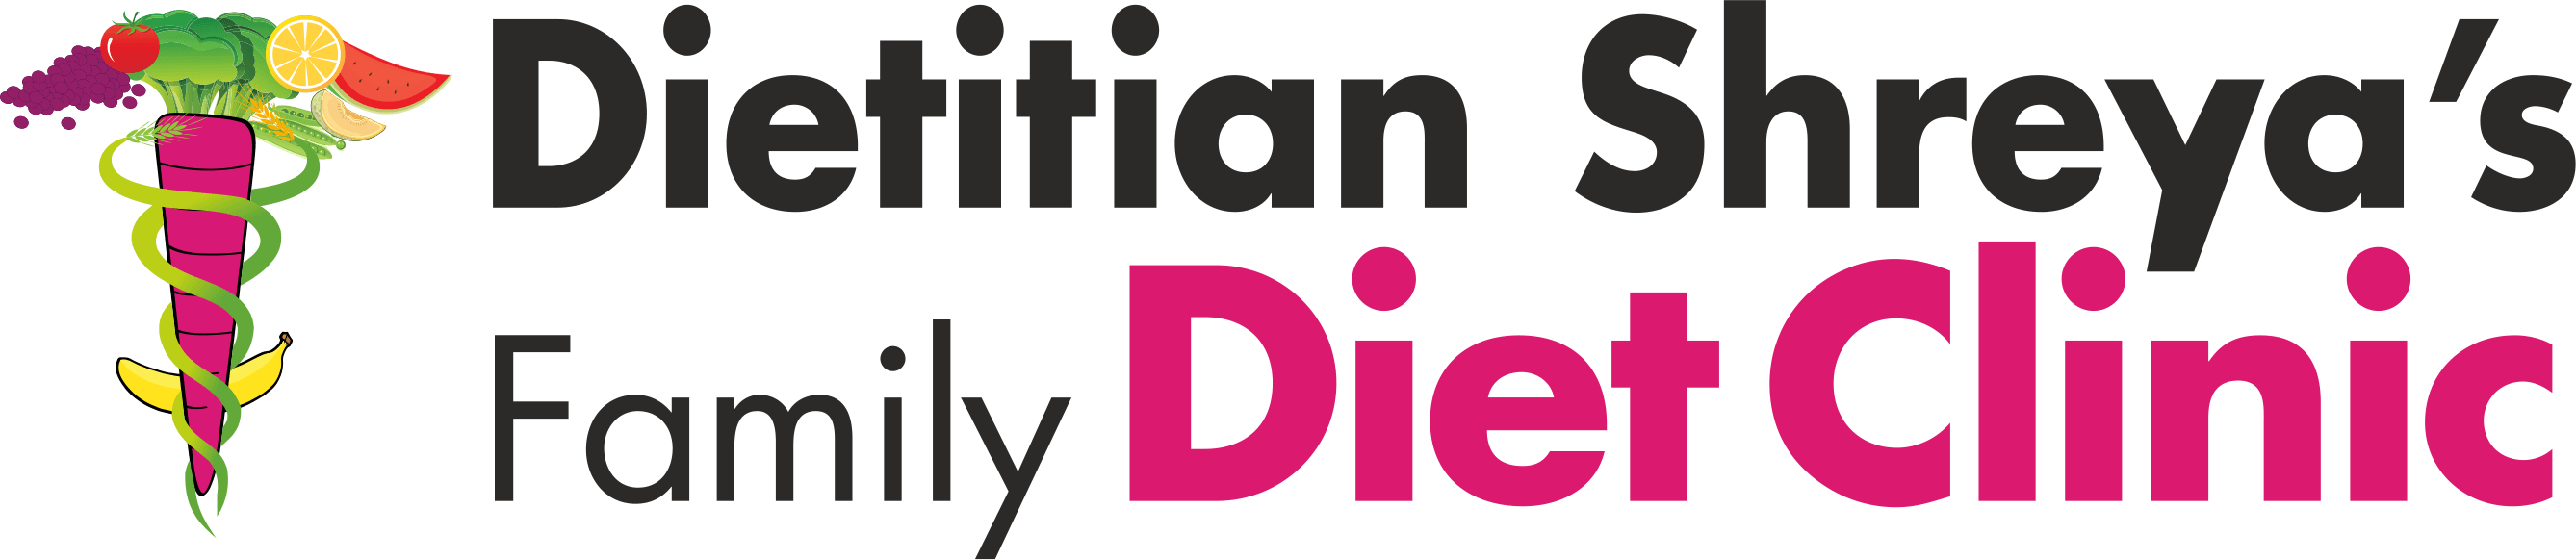 Dietitian Shreya's Family Diet Clinic